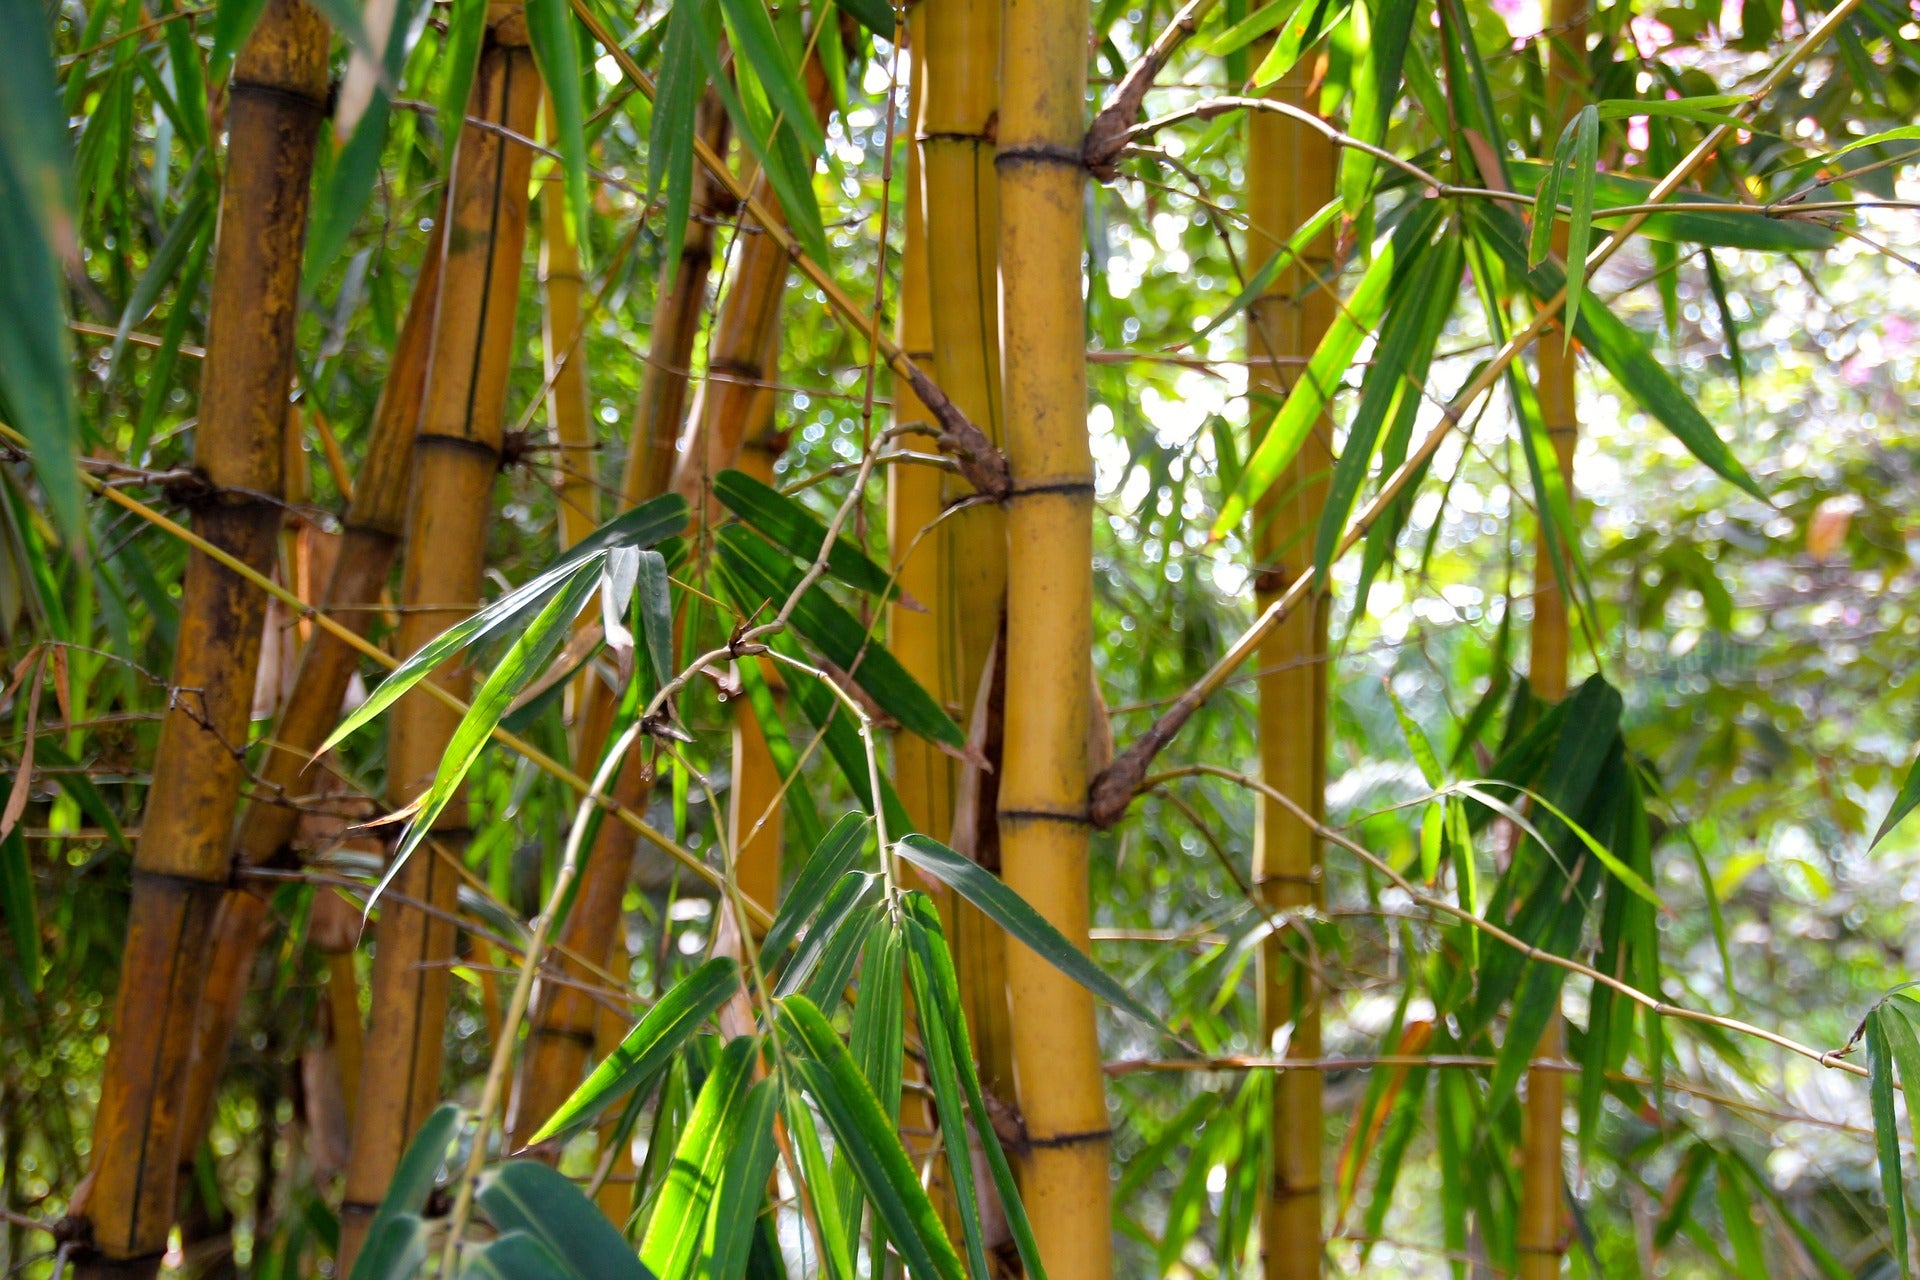 Bambuspflanzen mit braunen Rohren und grünen Blättern.